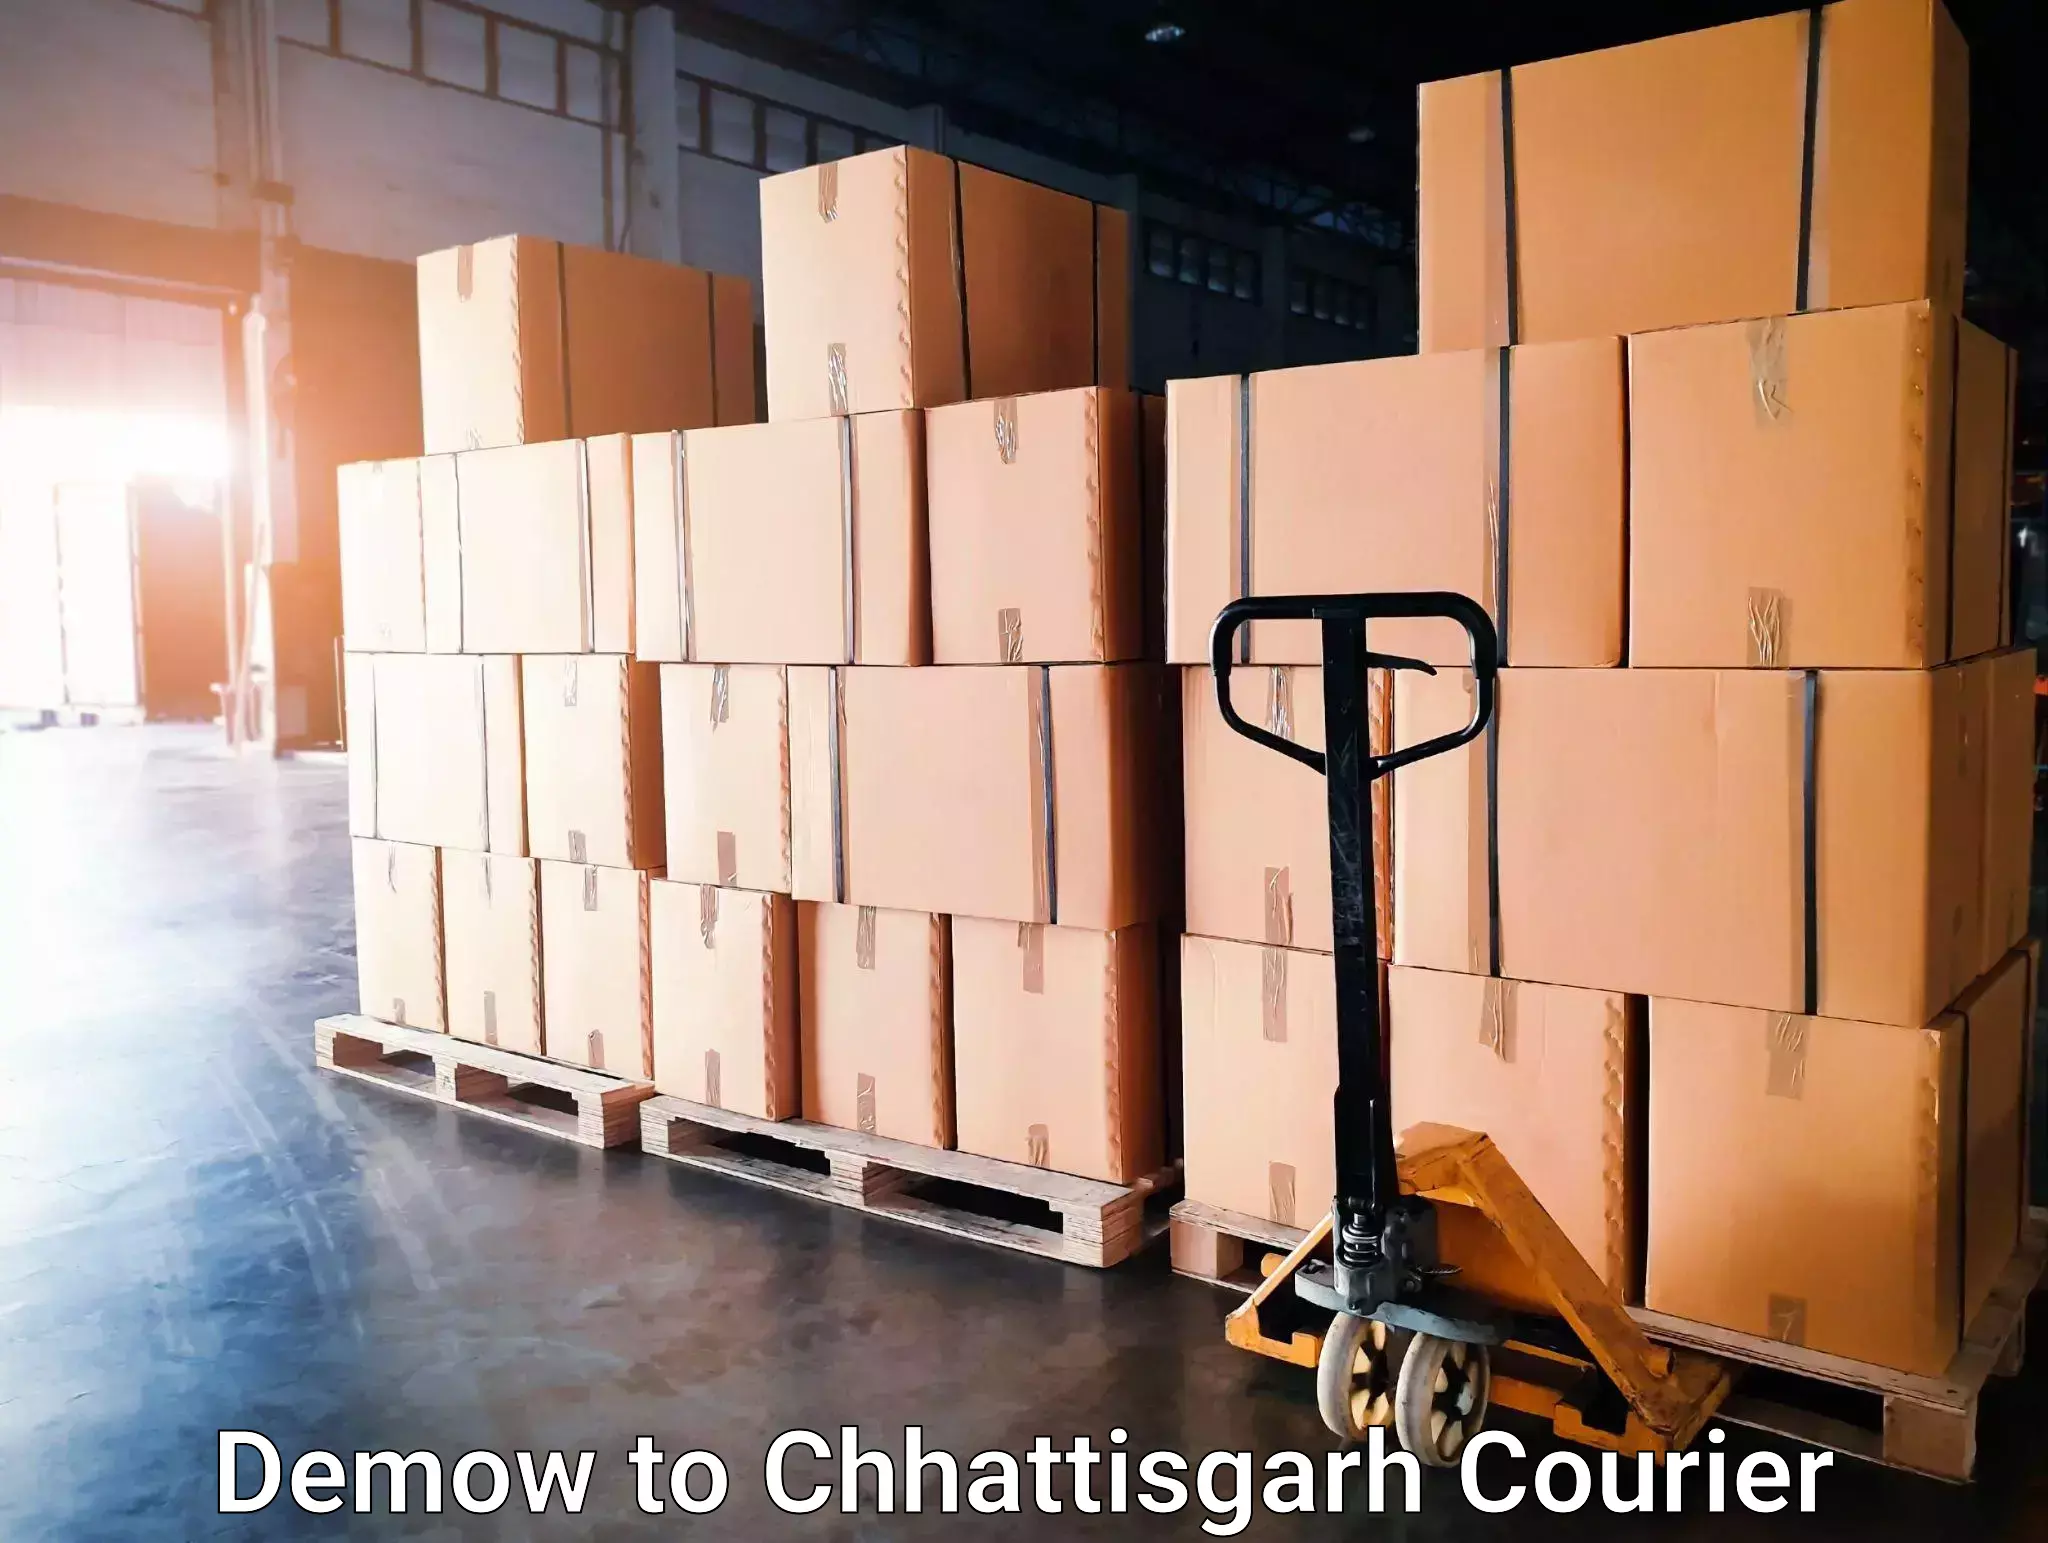 Urgent courier needs Demow to Patna Chhattisgarh